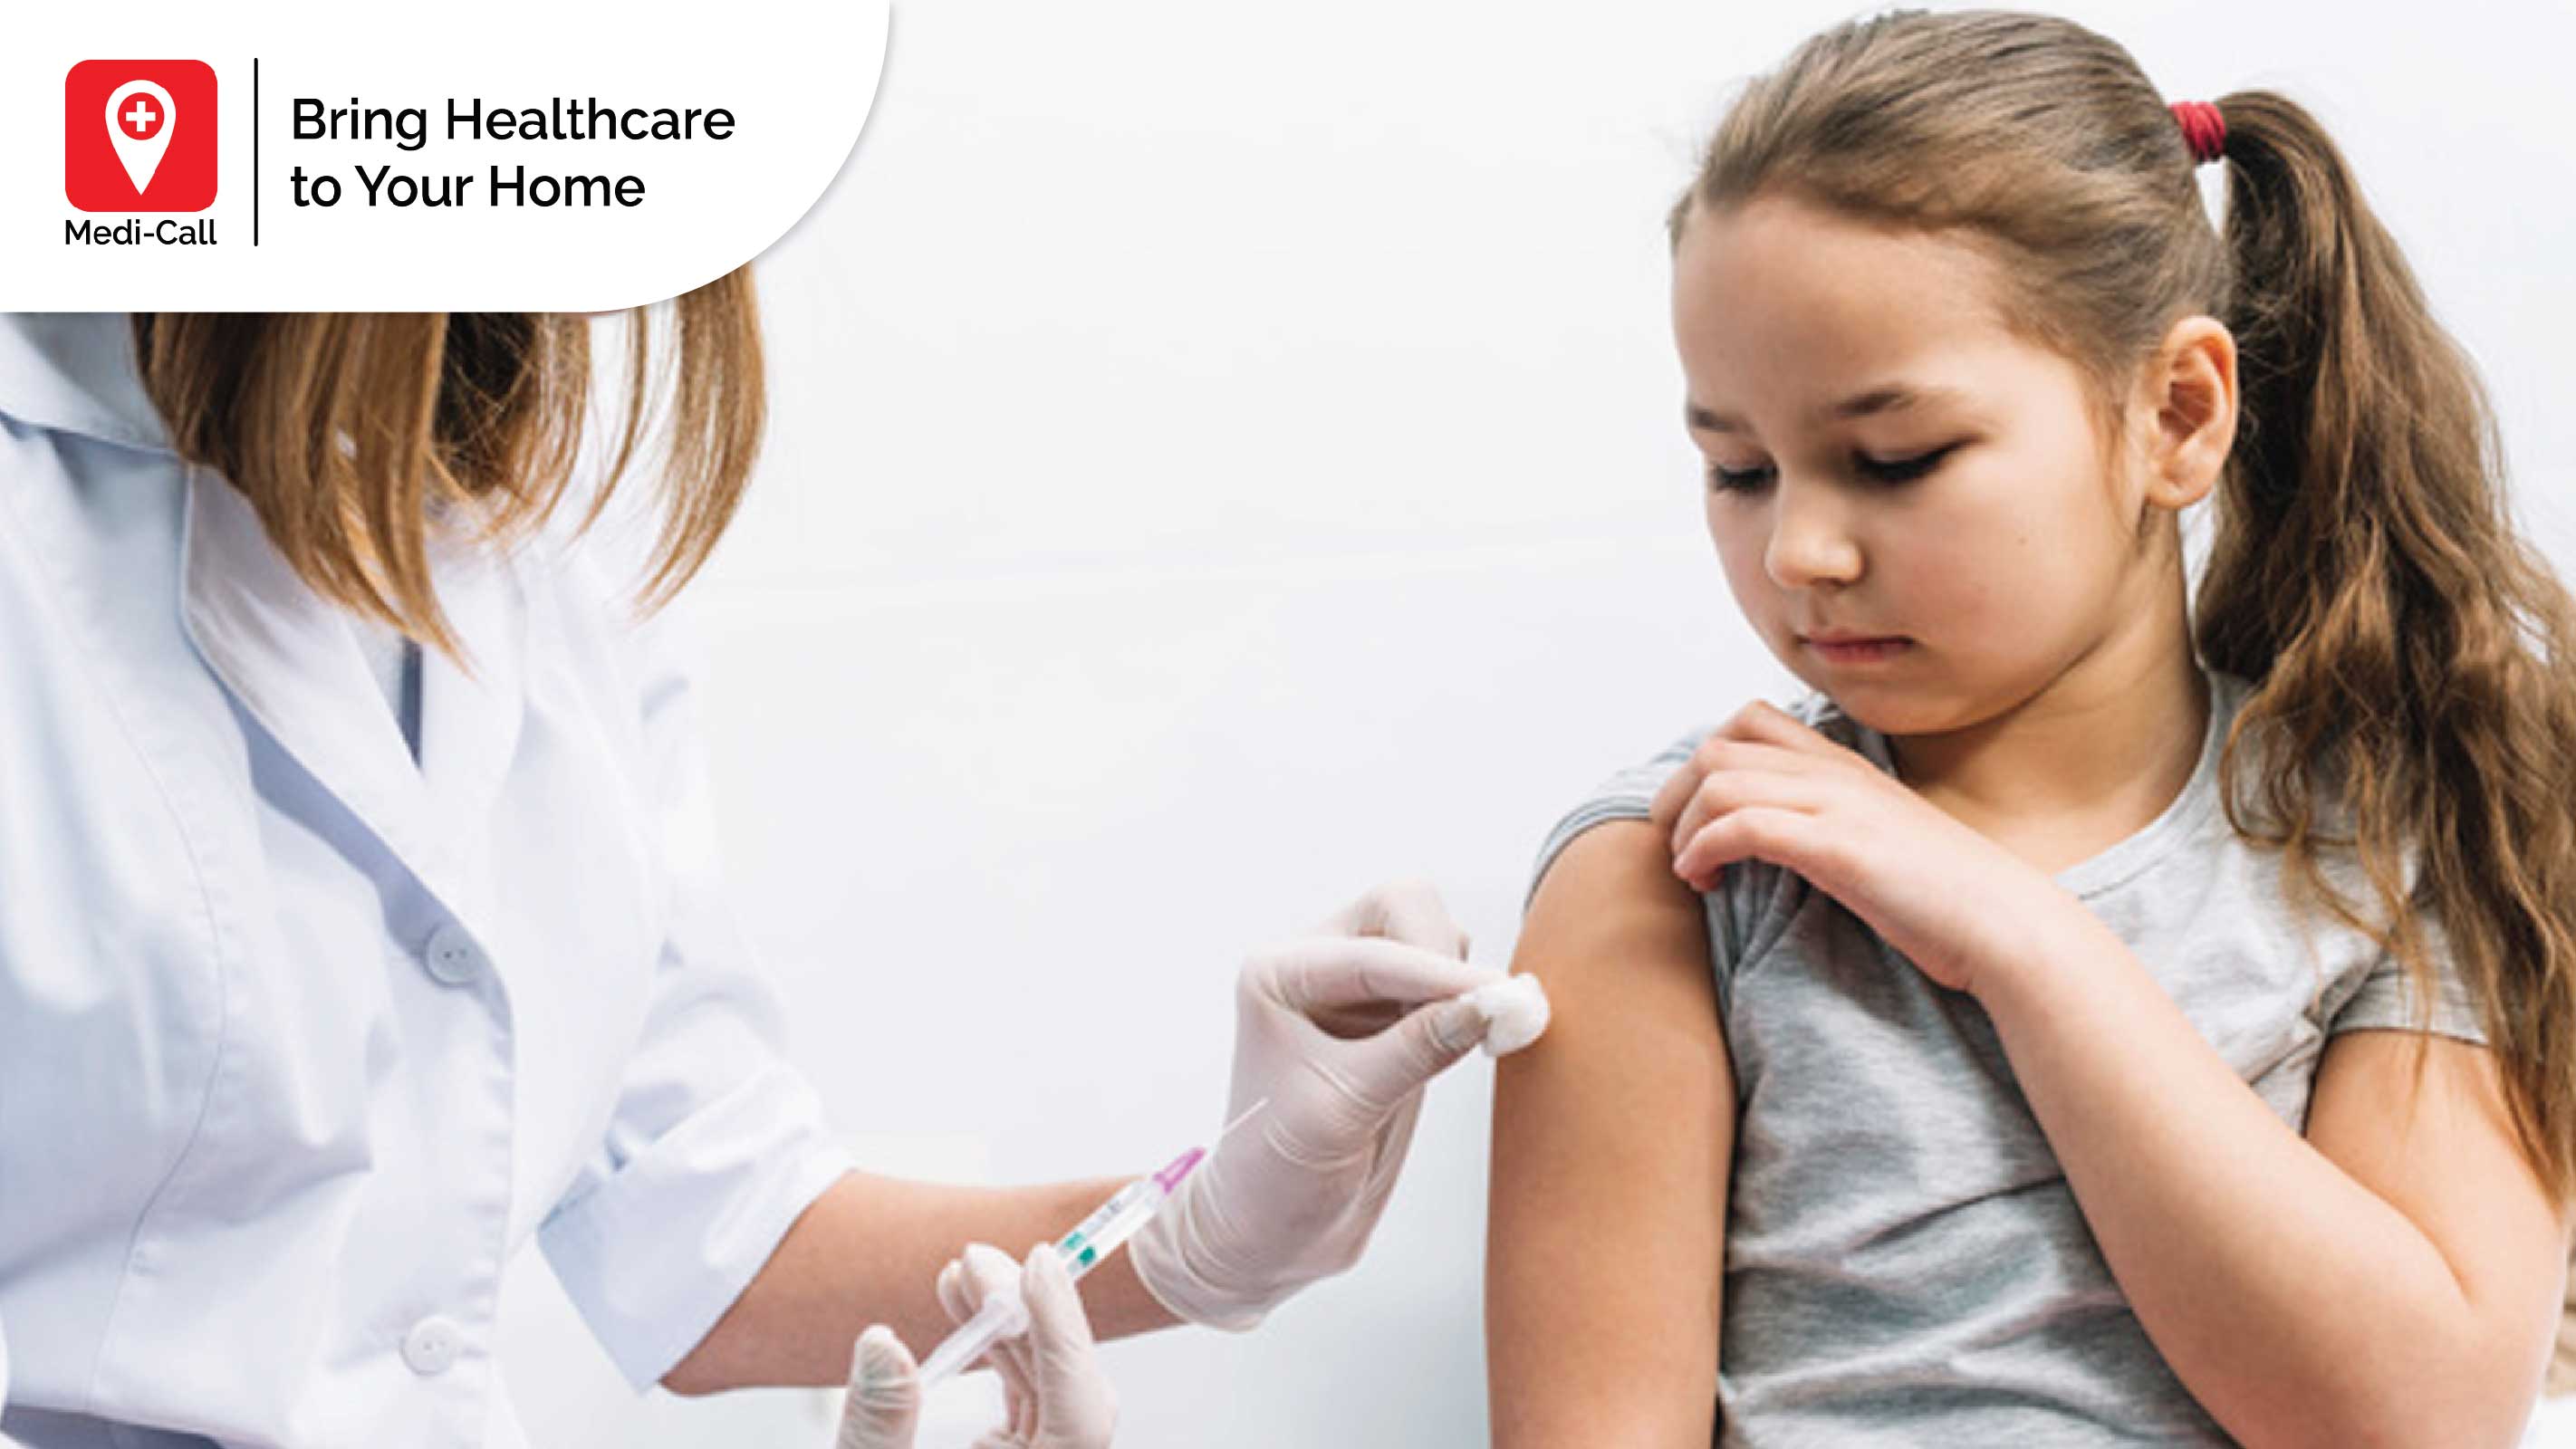 Vaksin Flu: Pilihan Tepat untuk Melindungi Anda dan Keluarga